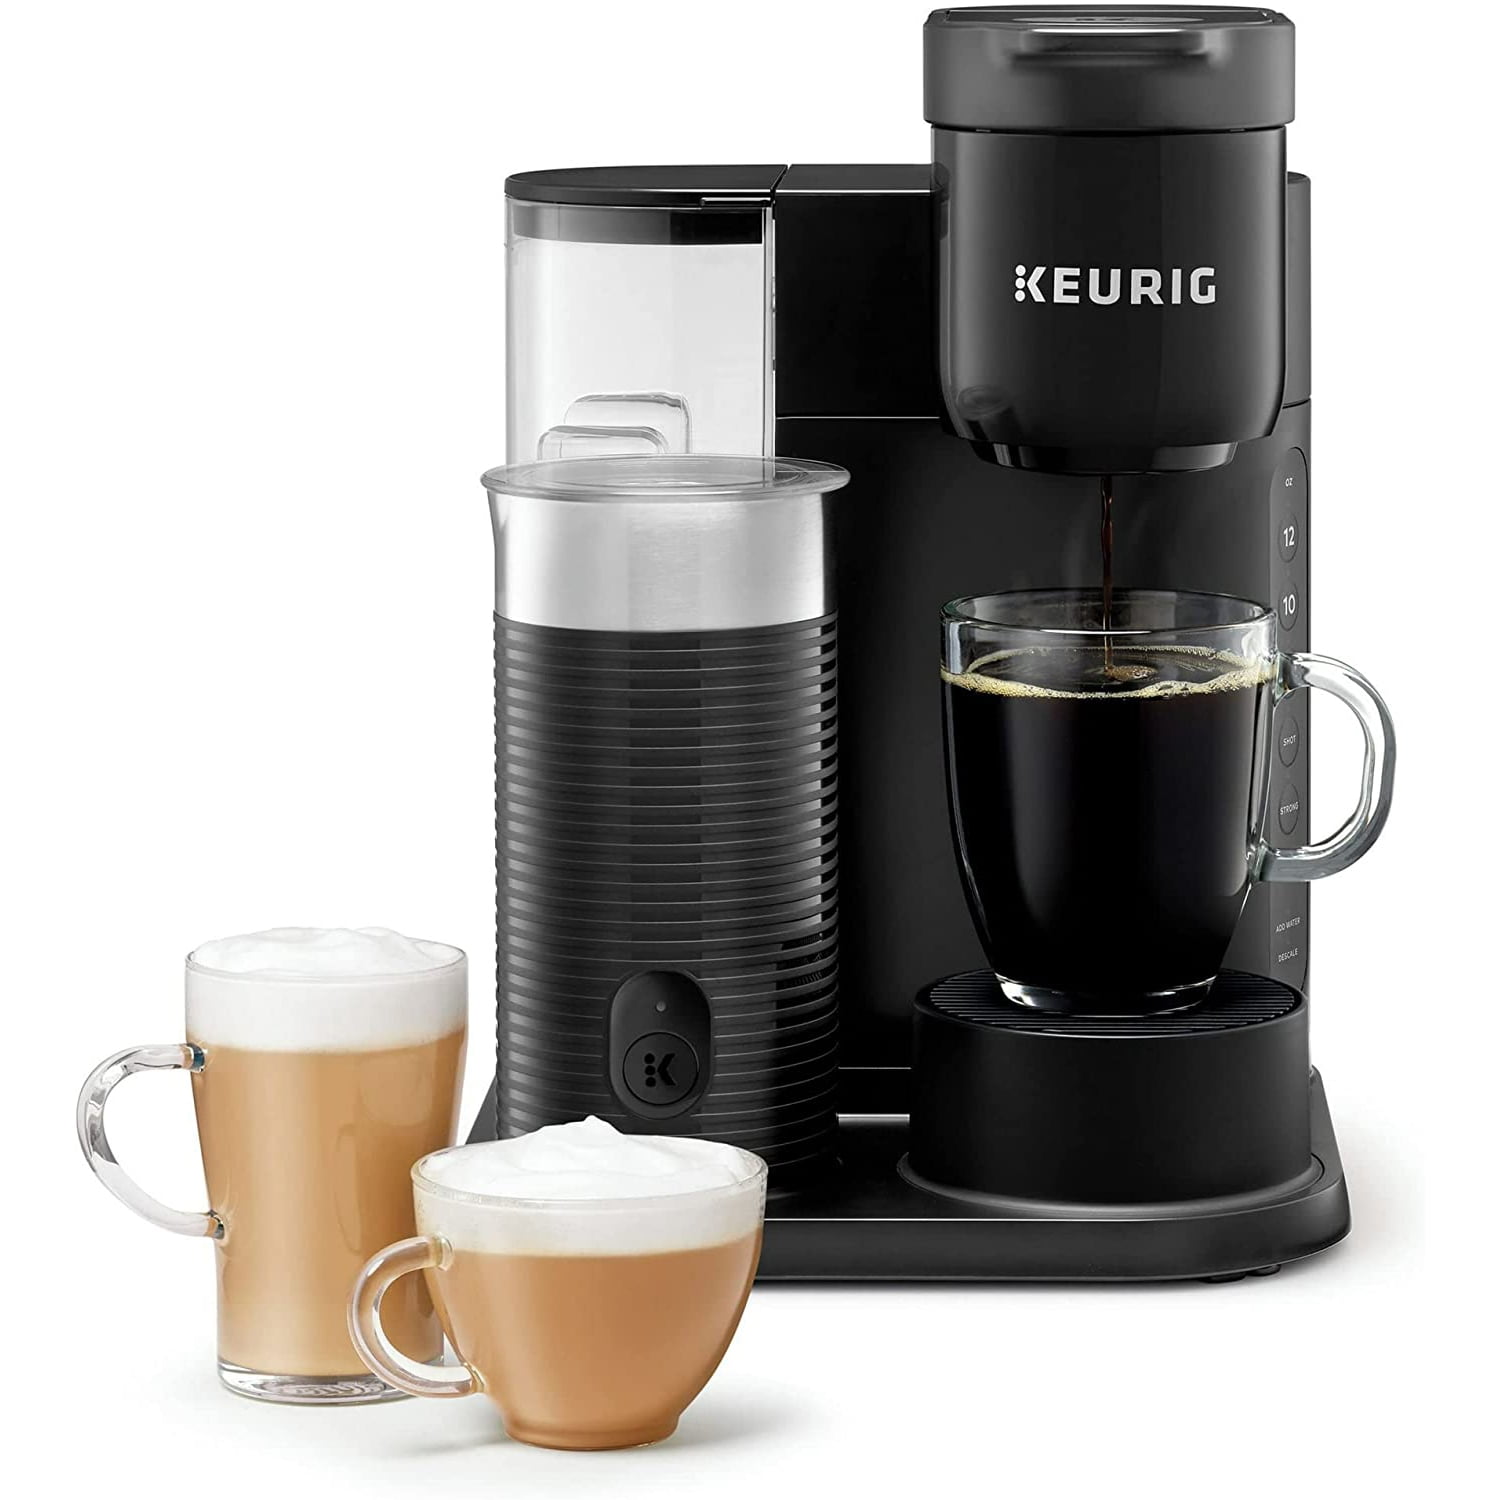 Keurig K-Café SMART Single Serve Coffee Maker recommends drinks